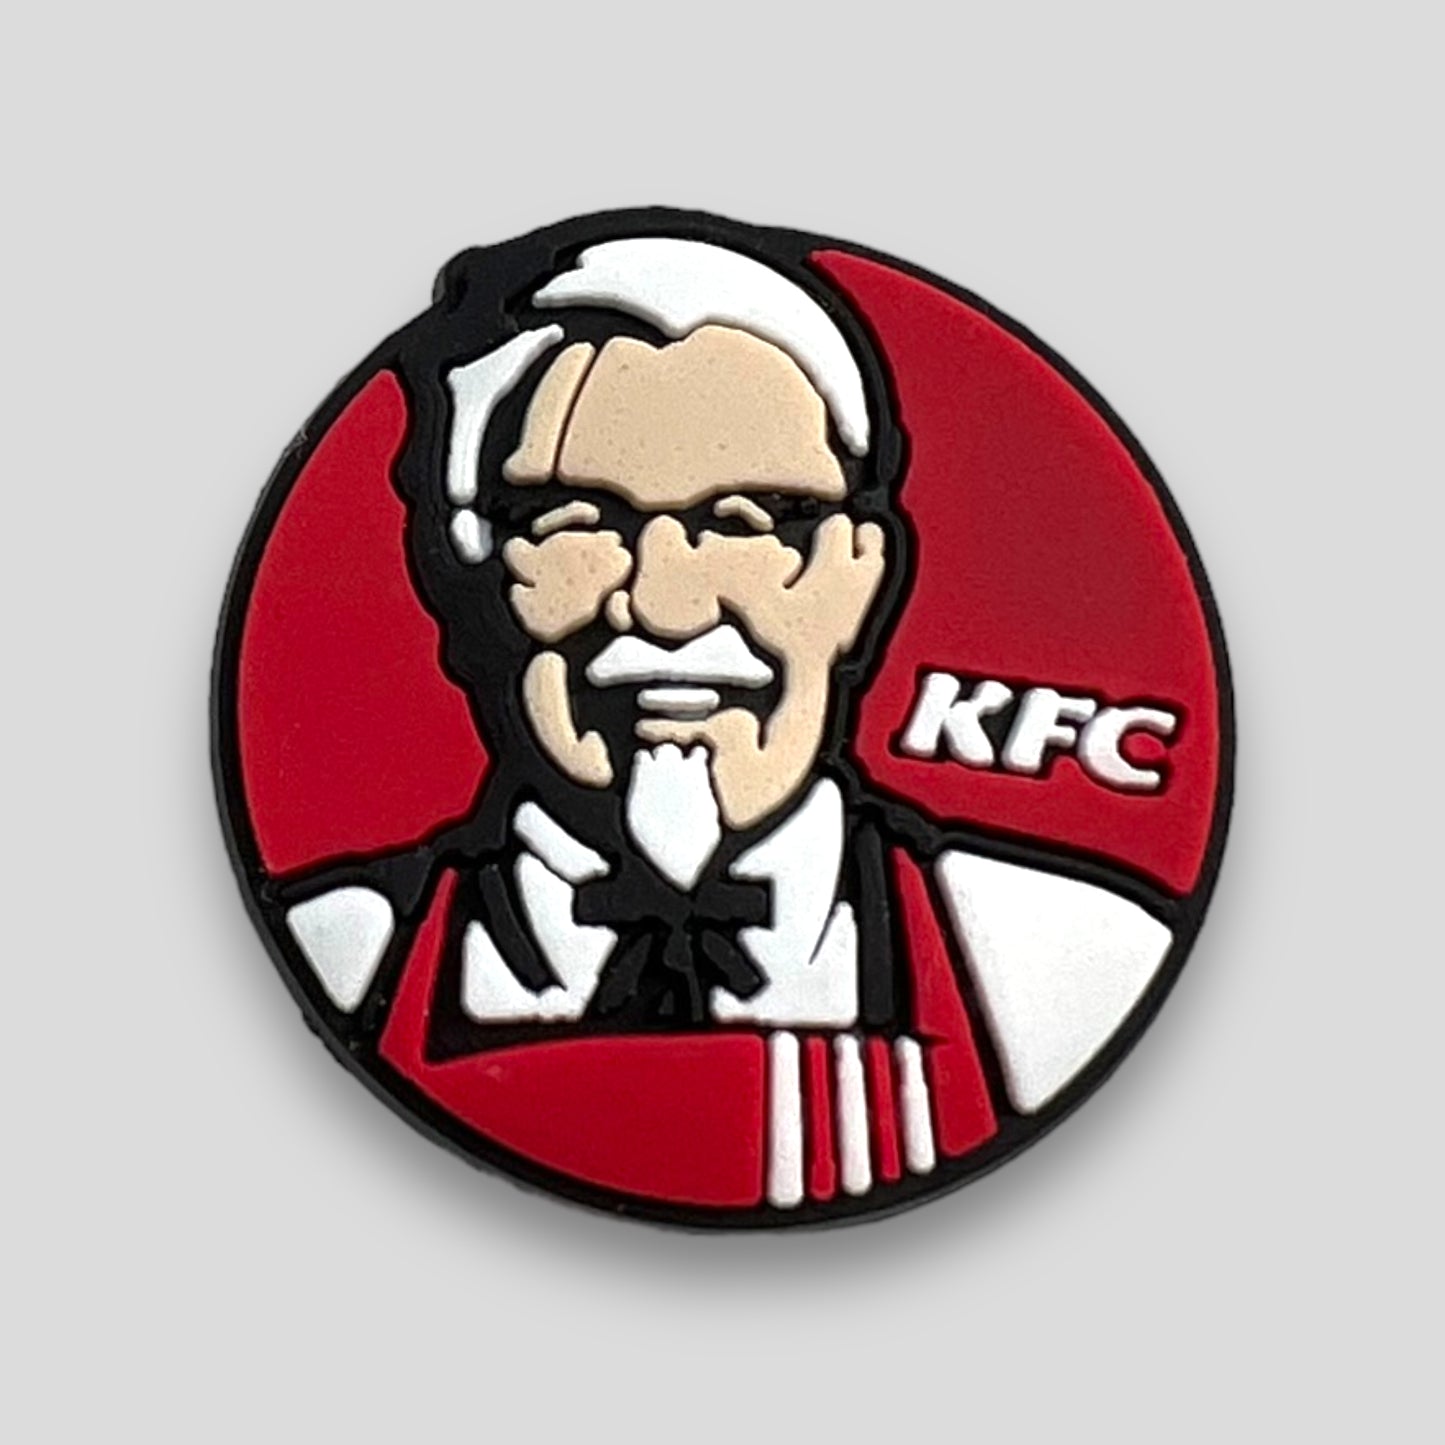 KFC | KFC